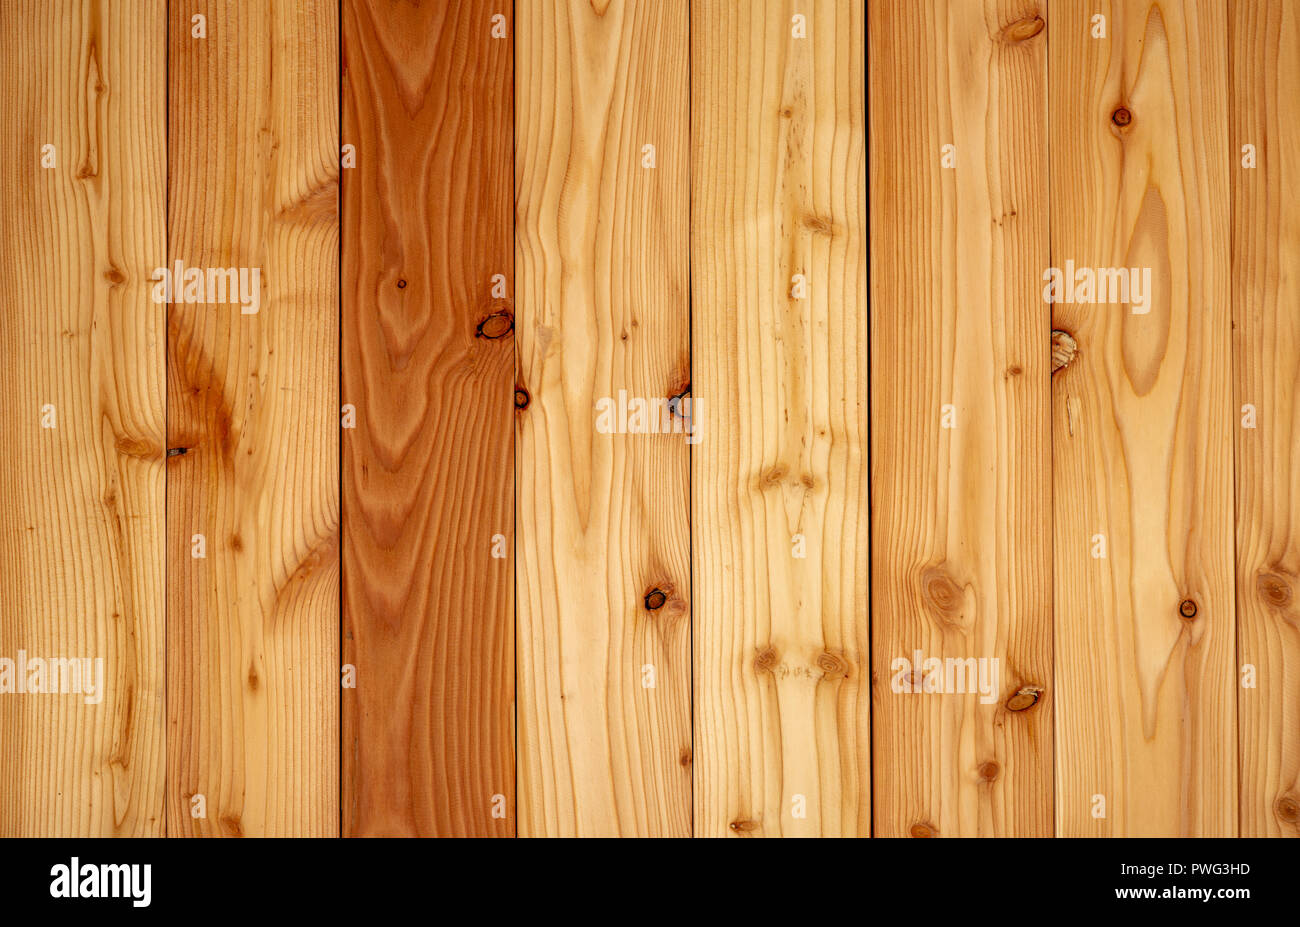 Với sự đa dạng về màu sắc và hoa văn, khổ gỗ, chất liệu gỗ cung cấp cho bạn một loại hình nền mạnh mẽ. Tìm kiếm hình ảnh với chất liệu gỗ để tìm thấy sự phù hợp tốt nhất cho website của bạn.